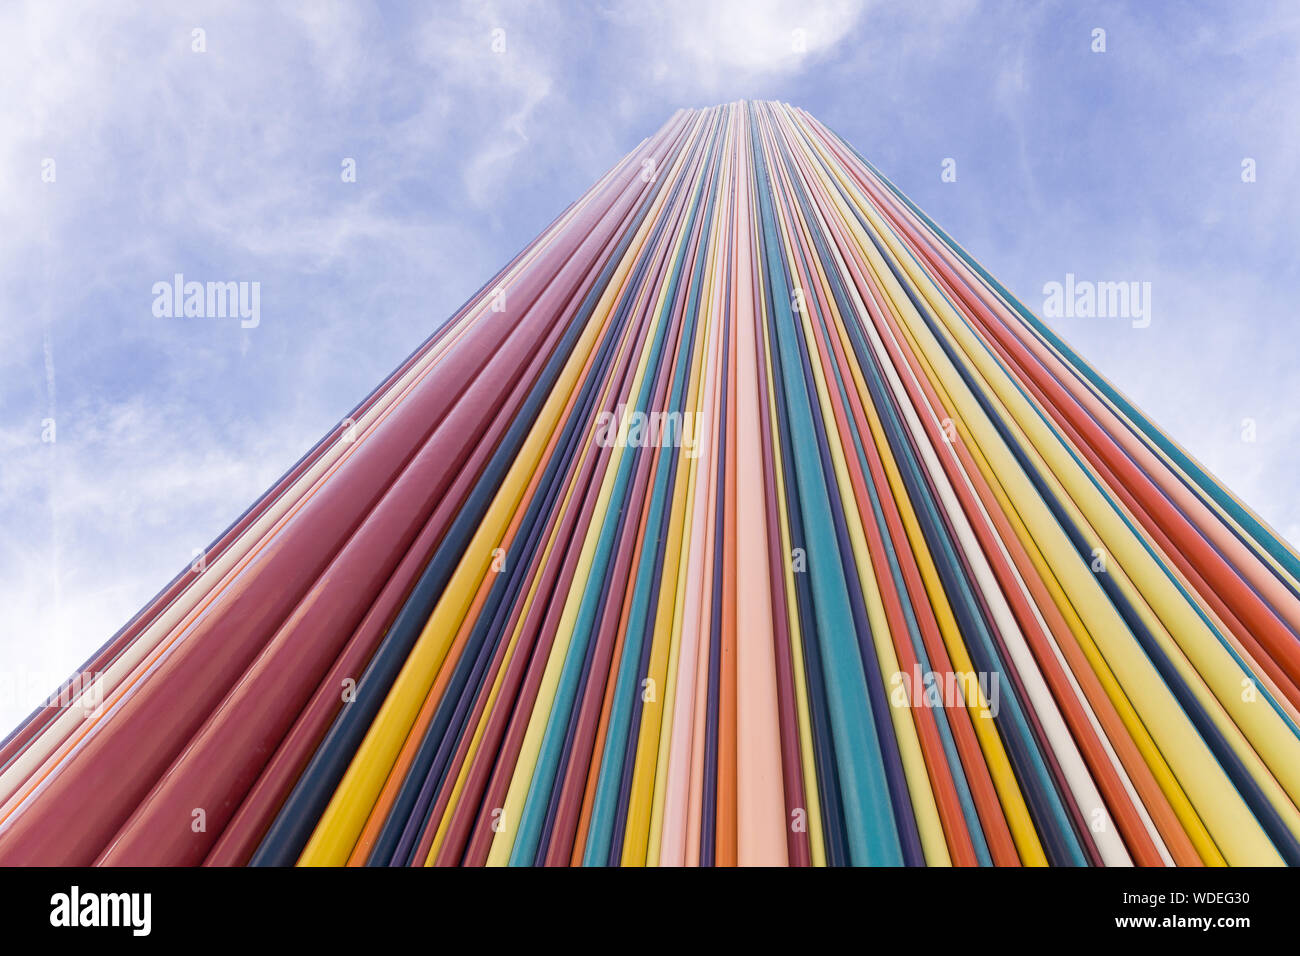 Le Moretti - Détail de la cheminée' 'Moretti, 32 m de haut, la sculpture en fibre de verre installé à la défense, à Paris, France, Europe. Banque D'Images